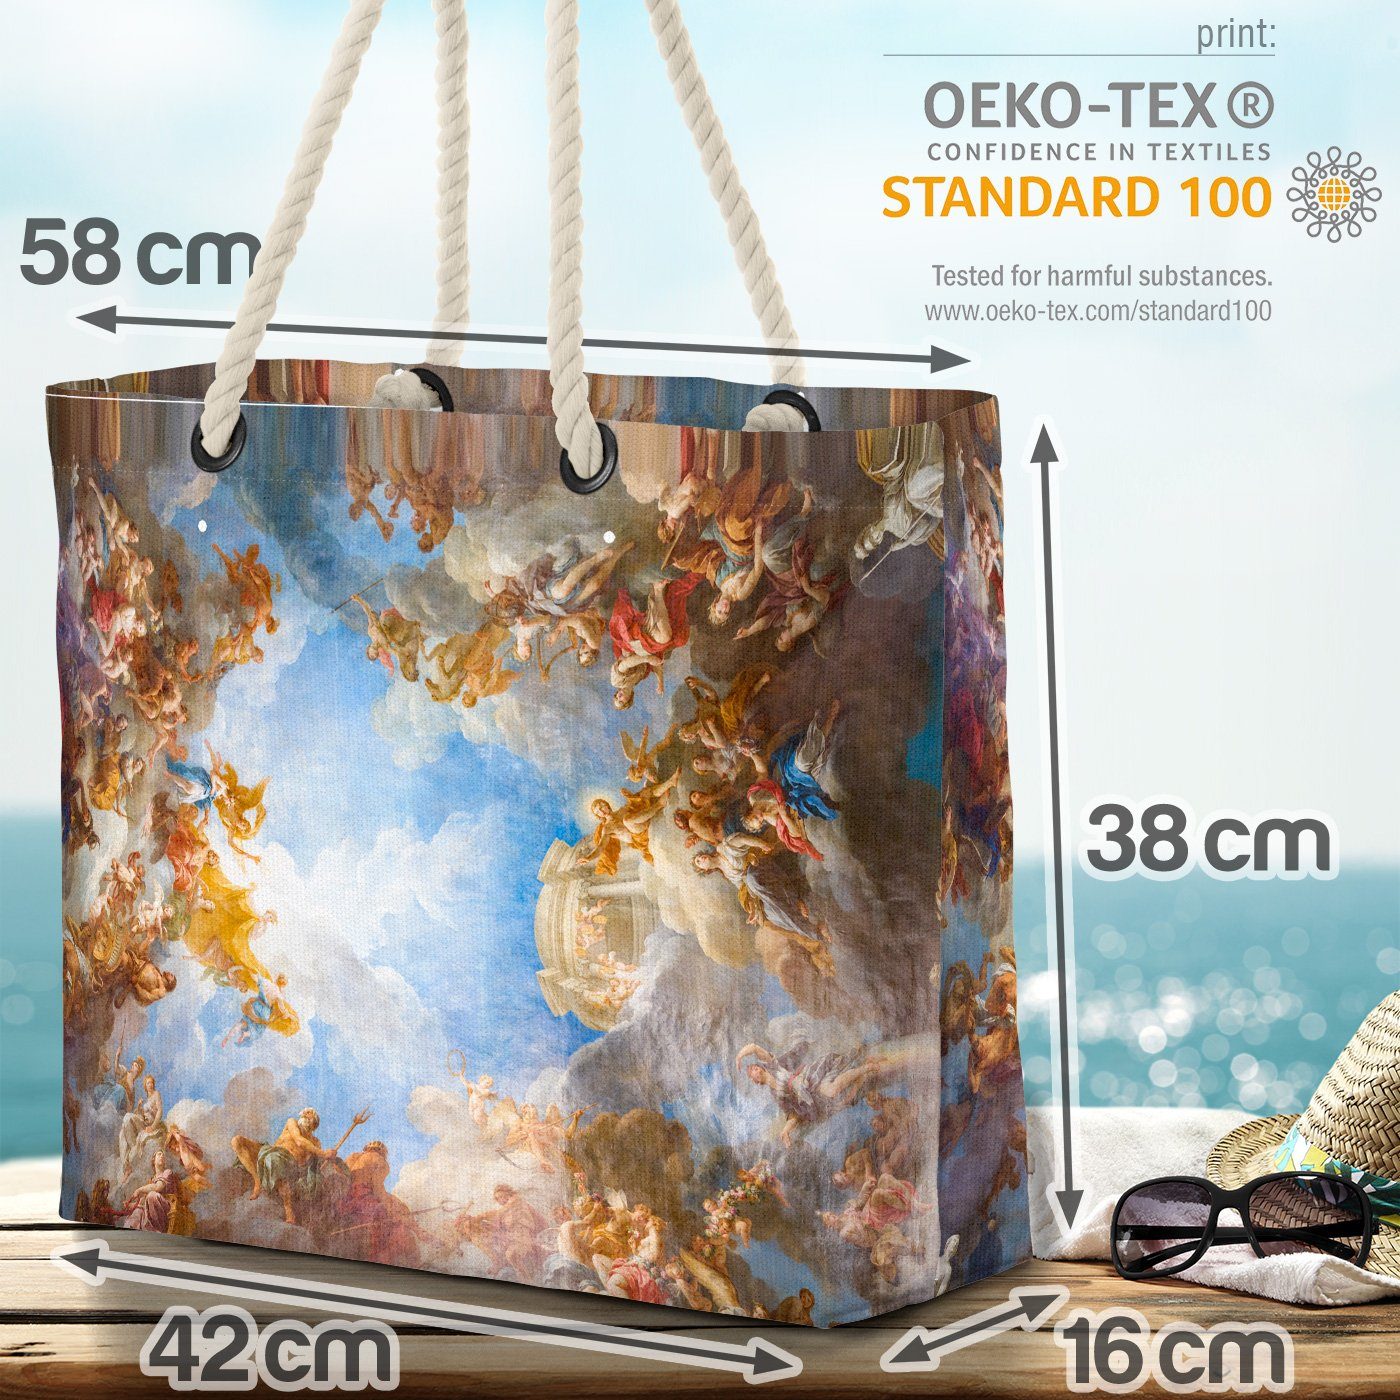 VOID Strandtasche (1-tlg), Versailles Deckengemälde Frankreich Kunst Paris Kunstdruck Gemäde Beach Bag